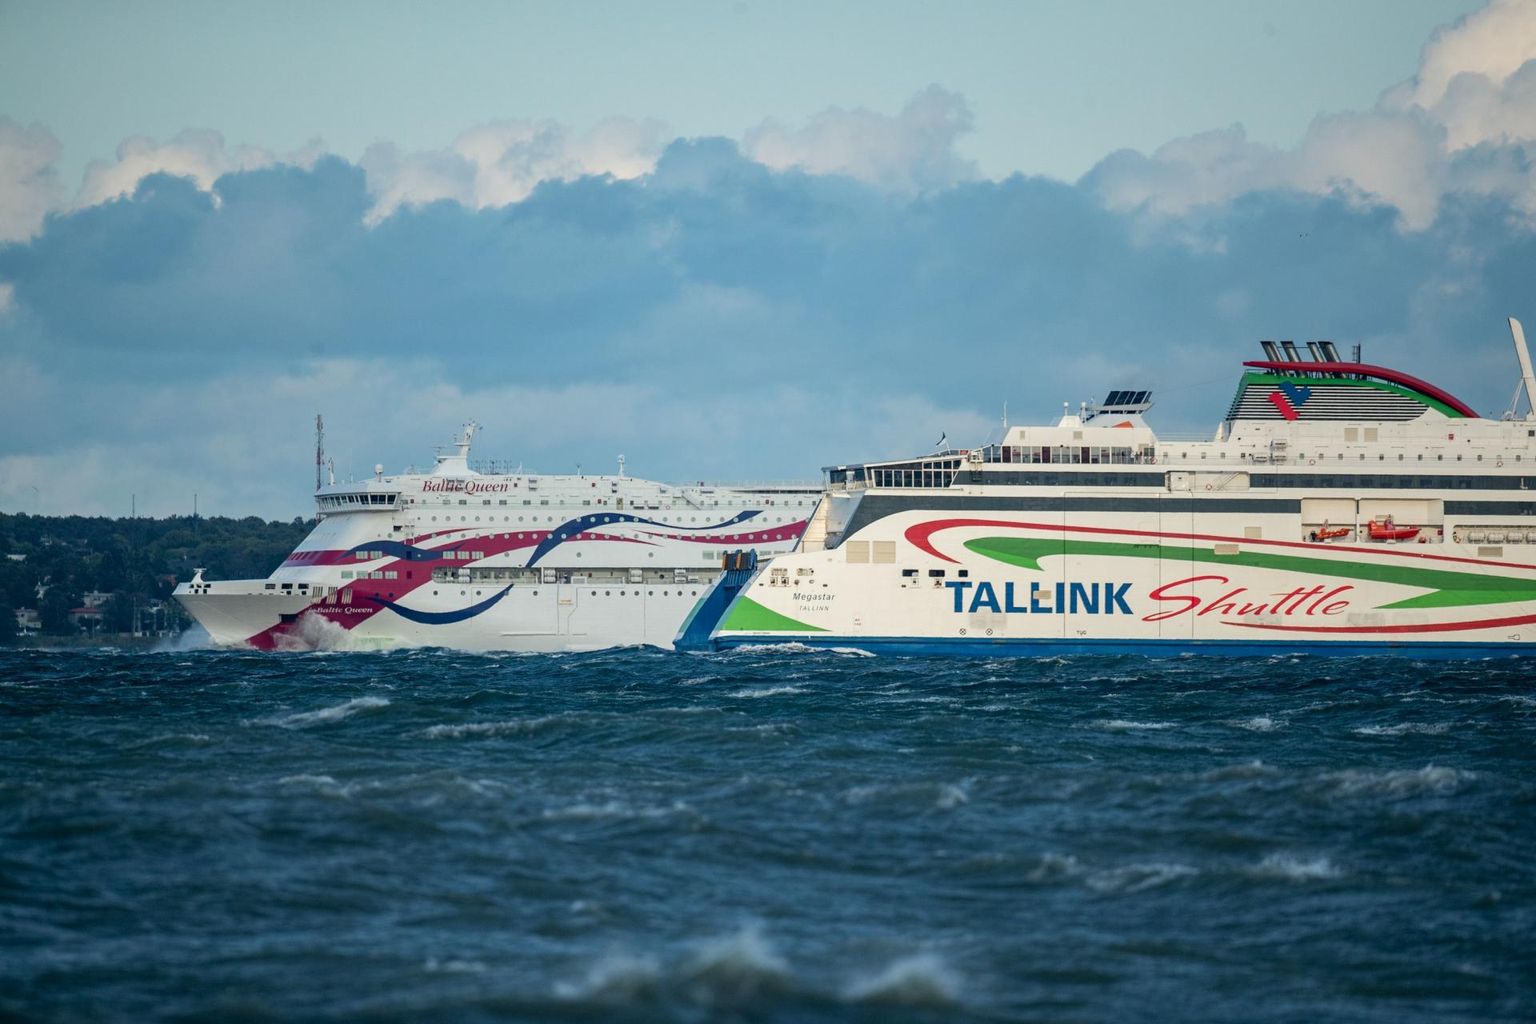 Tallink avab koostöös meditsiinikeskusega Confido järgmise nädala neljapäeval ja reedel Tallinki Eesti ja Soome vahel reisivatele klientidele võimaluse end koroona vastu vaktsineerida.